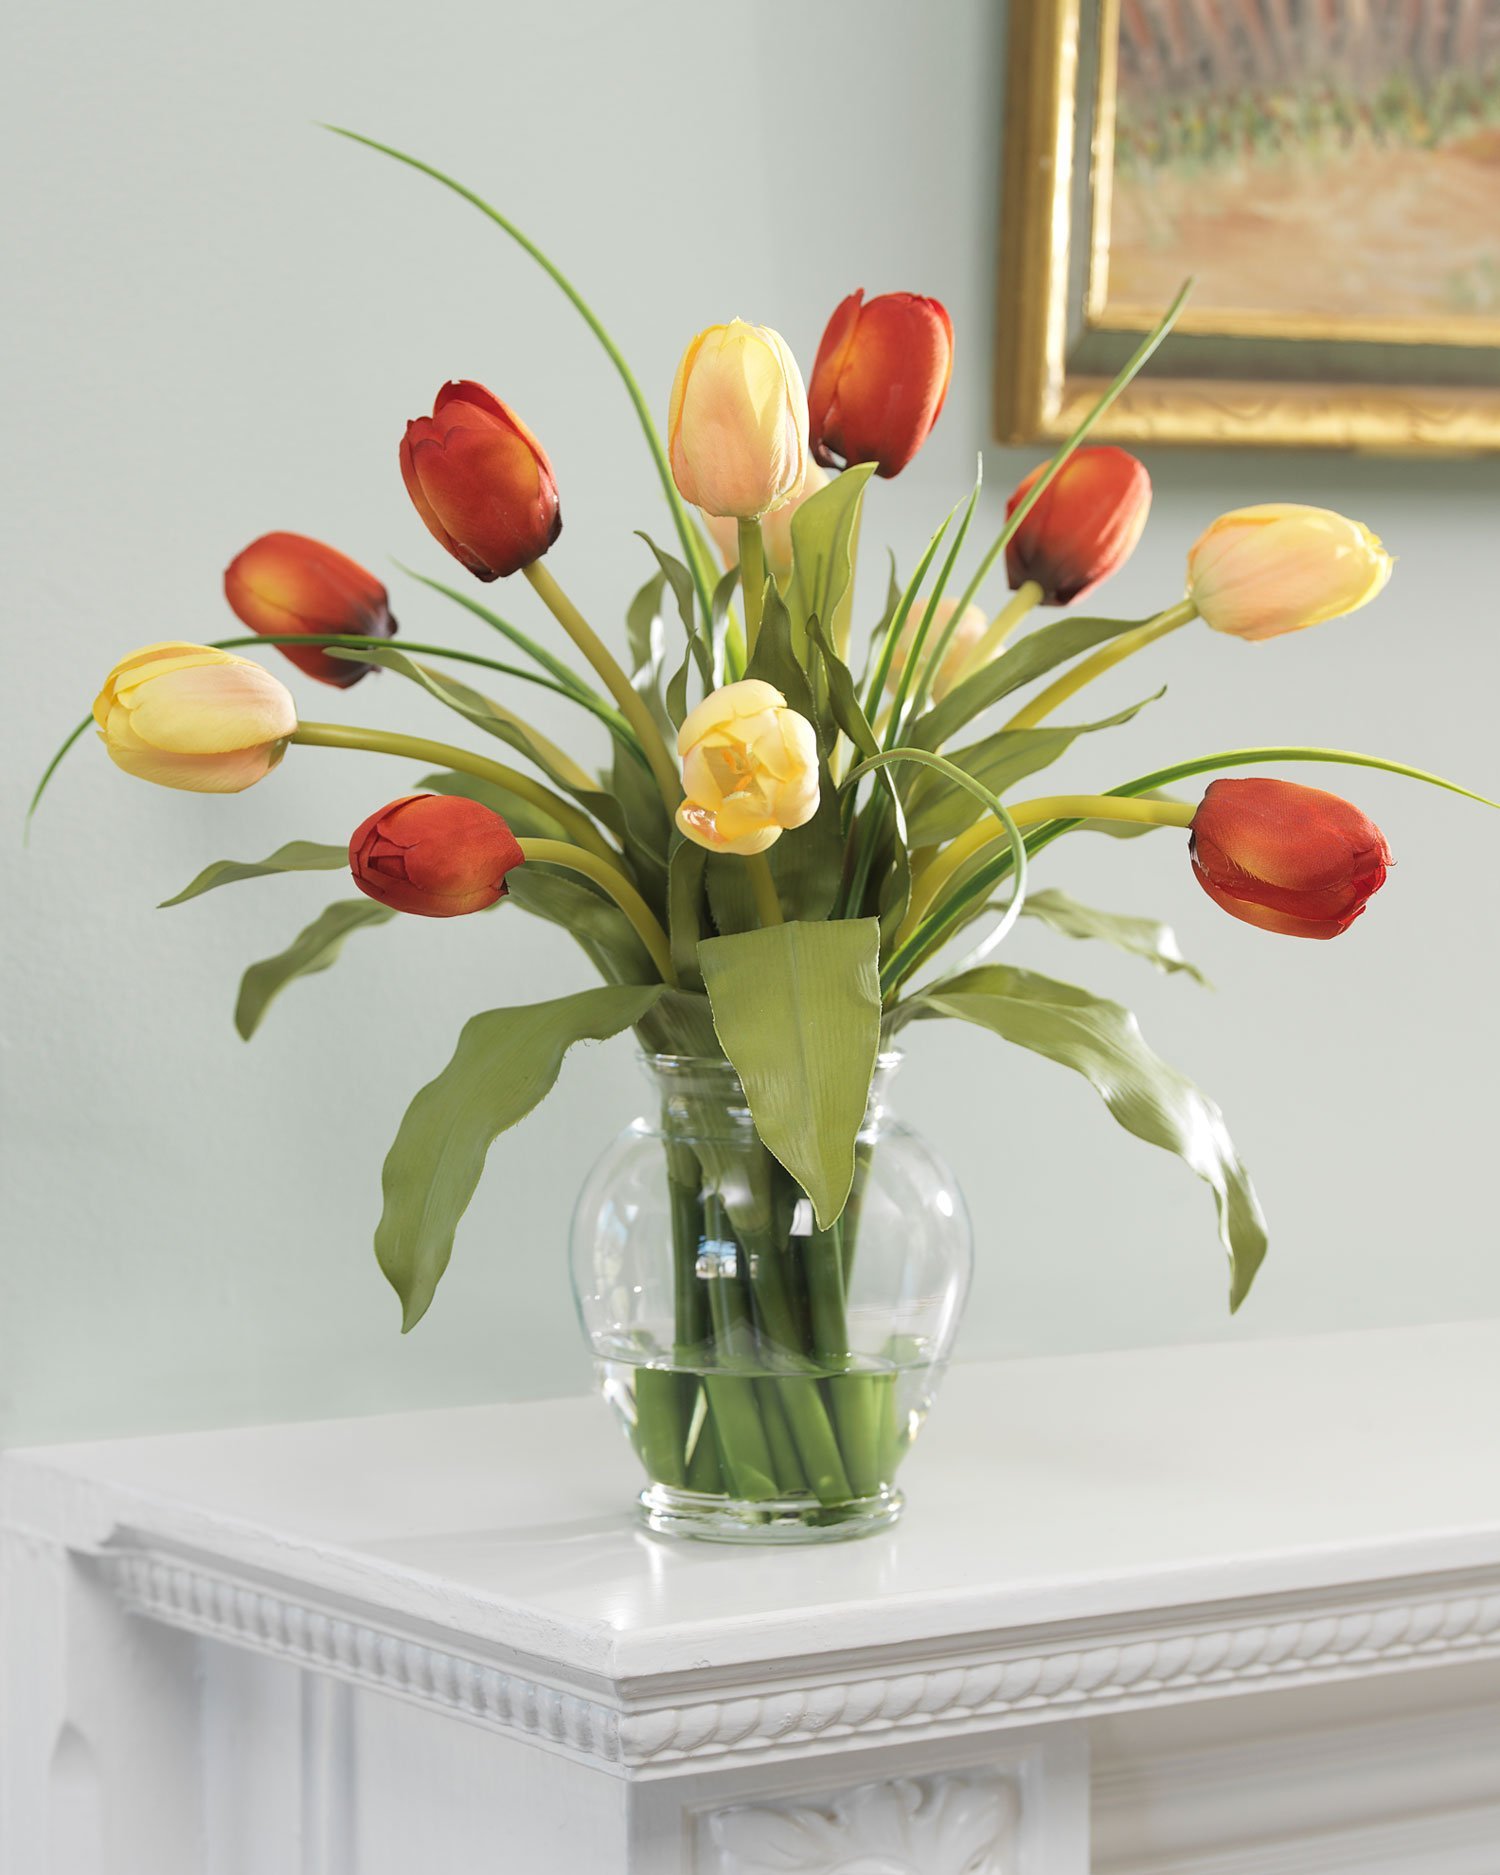 Как сохранить дольше свежие тюльпаны в вазе. Тюльпан. Тюльпаны в вазе. Композиция с тюльпанами. Вазы для тюльпанов.